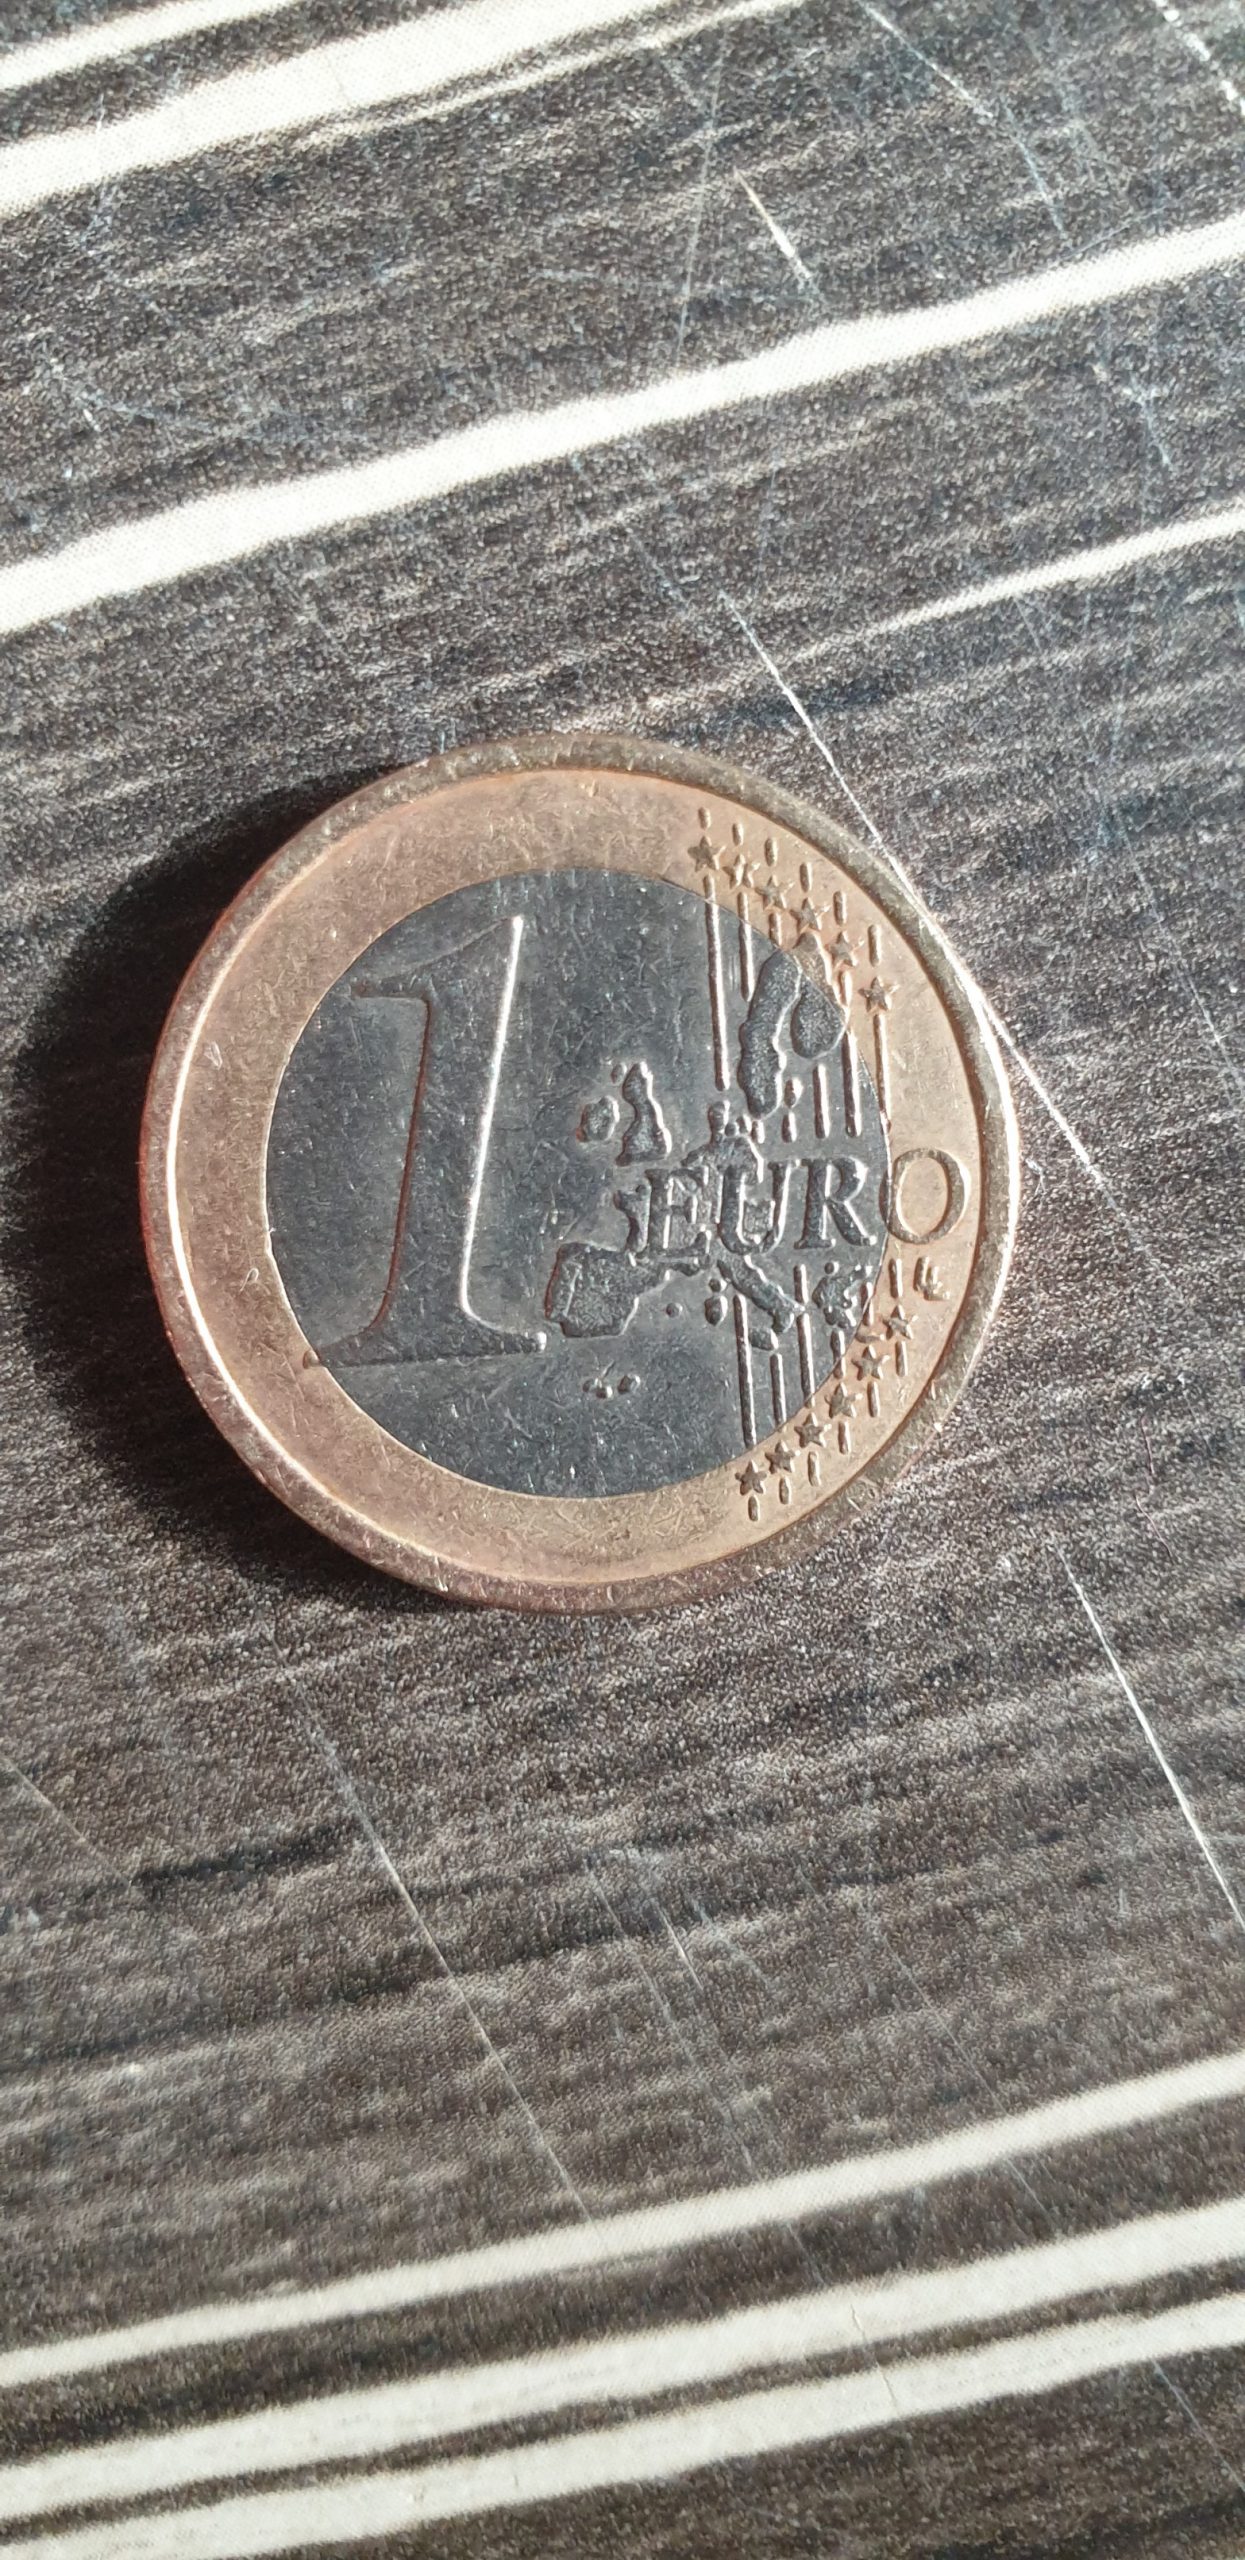 Possible error coin – Eventuelle Fehlprägung auf 1 Euro Münze ?